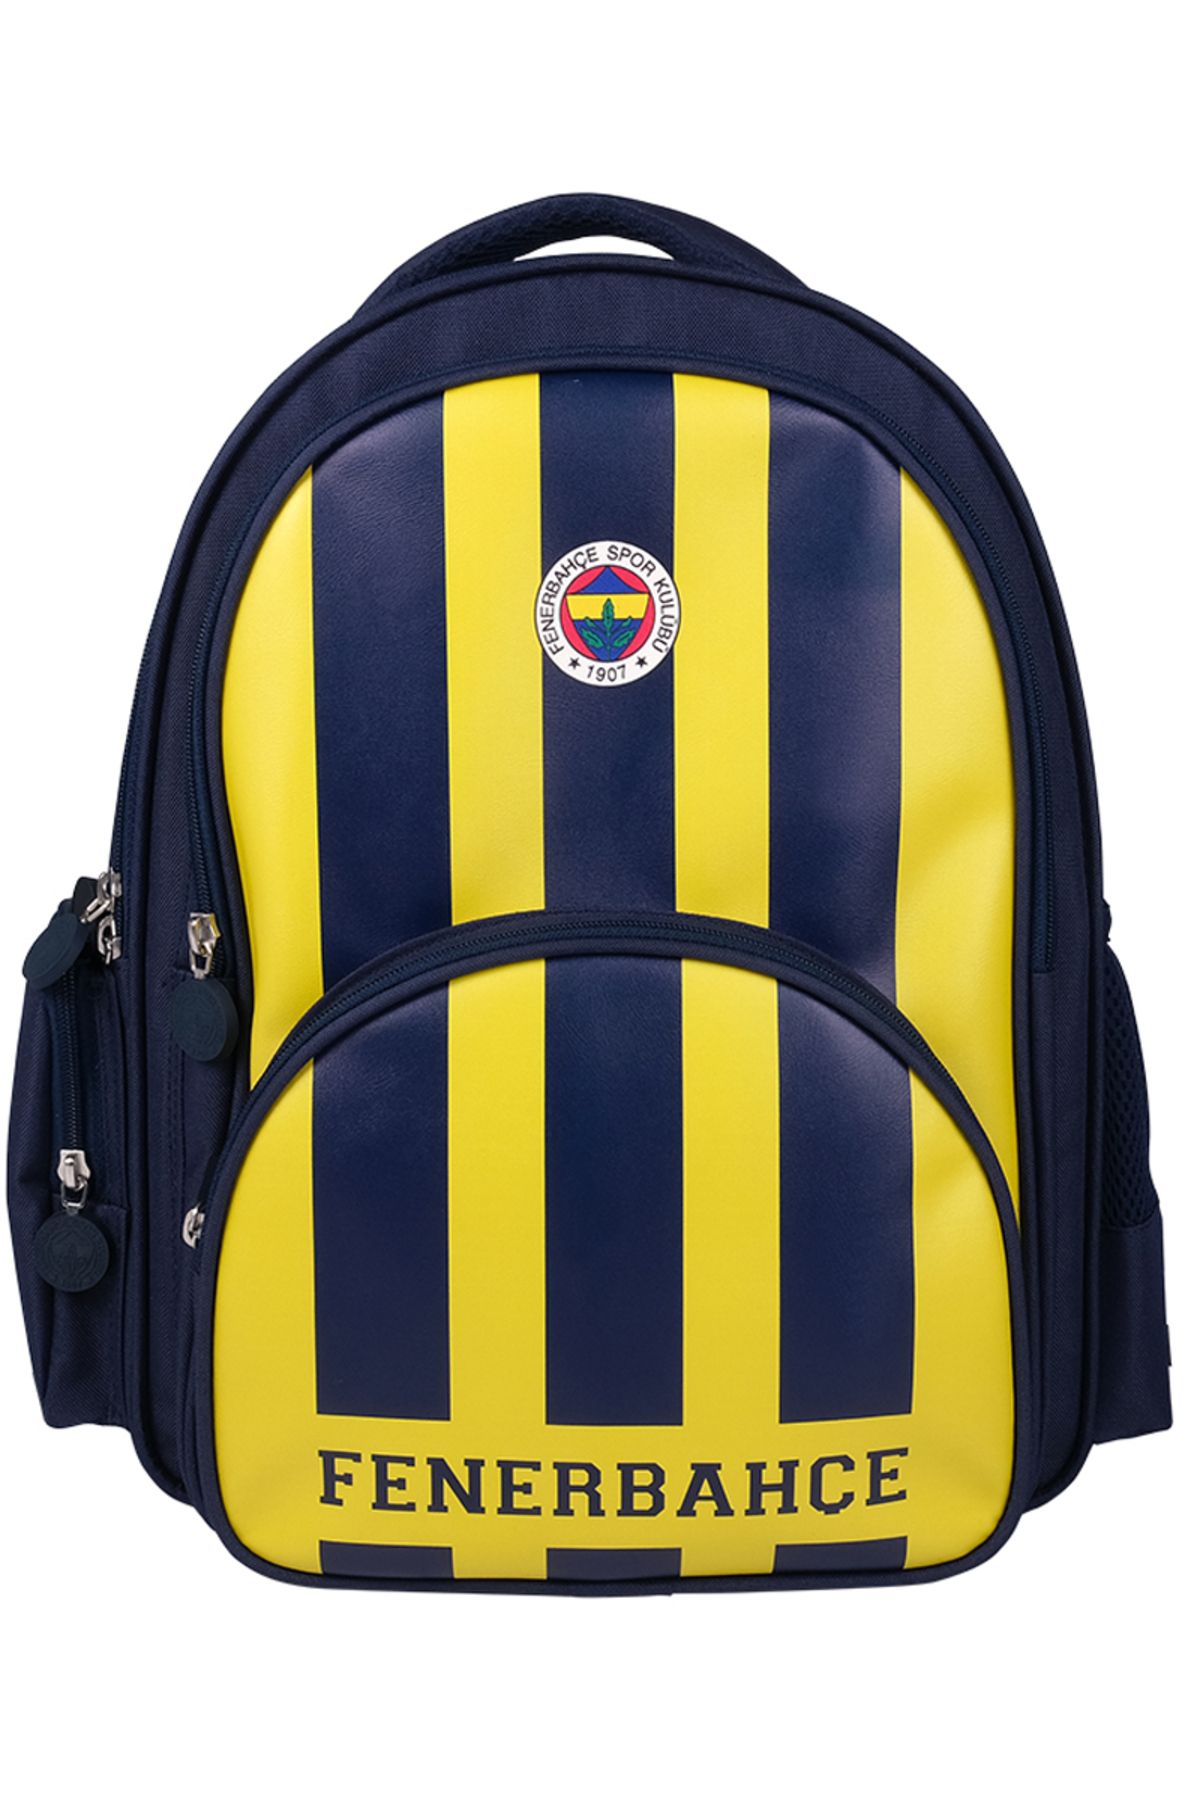 Fenerbahçe Lisanslı Suni Deri 3 Bölmeli Okul Çantası 24783